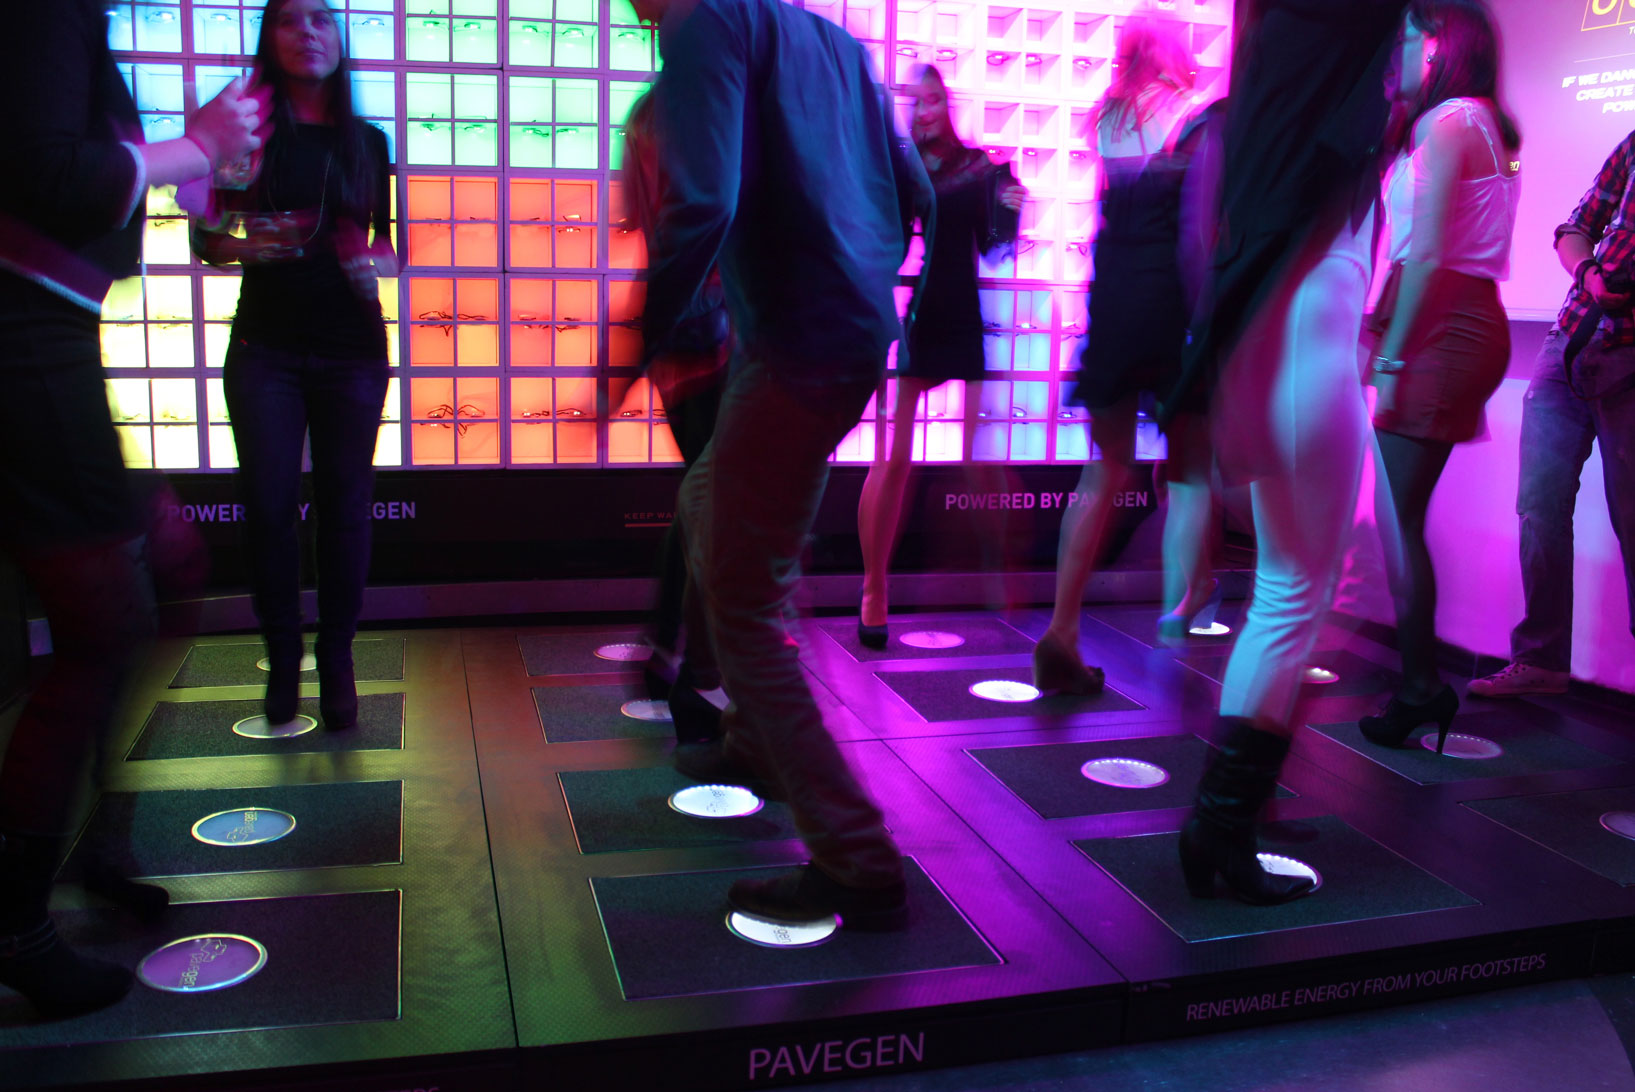 The Pavegen dance floor. 